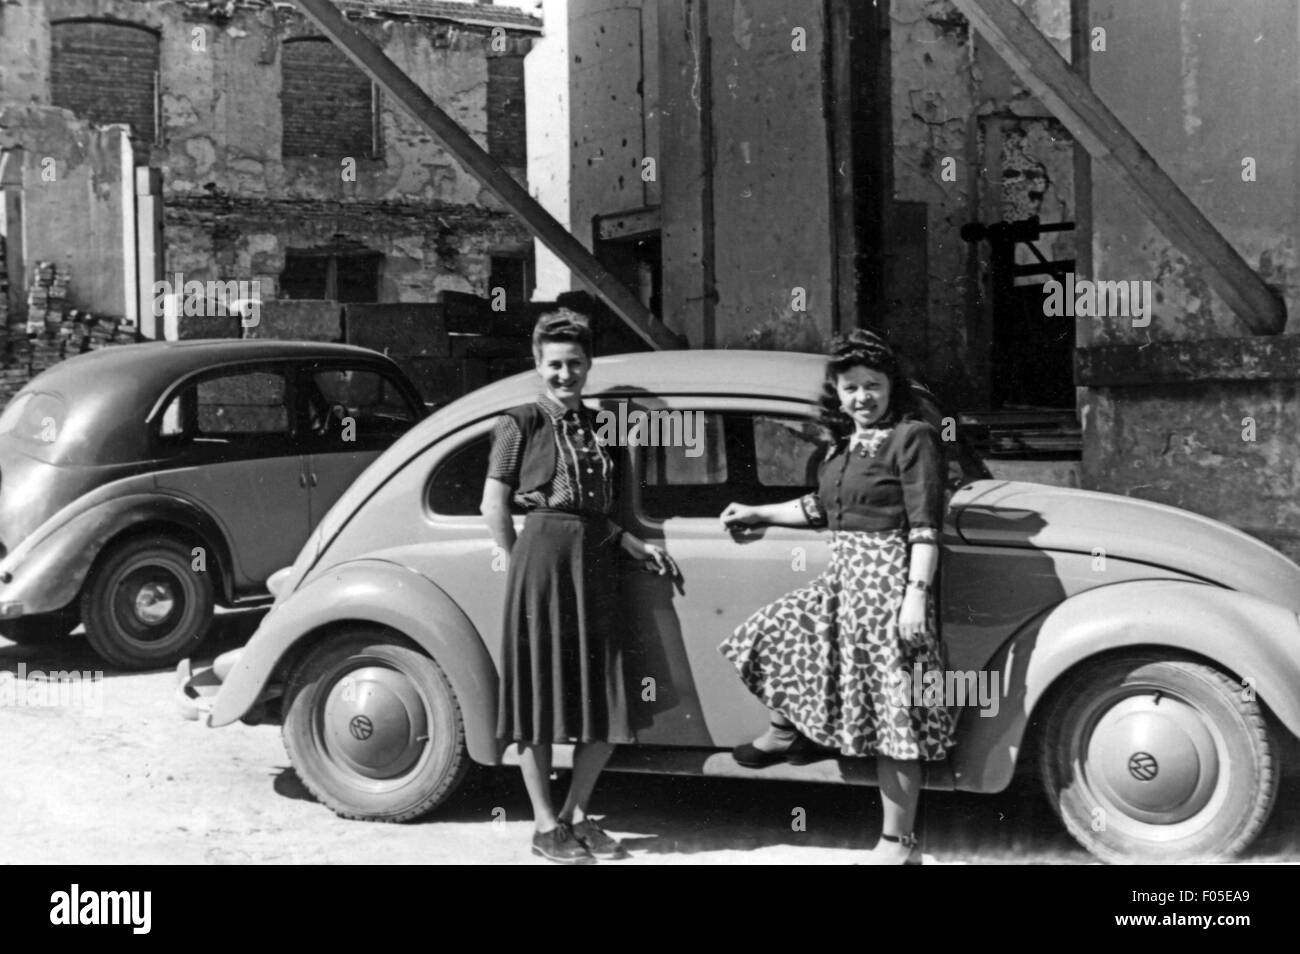 Transport / transport, voiture, variantes de véhicule, Volkswagen, VW type 1 Beetle, deux jeunes femmes devant le parking Beetle, Allemagne, fin des années 1940, droits supplémentaires-Clearences-non disponible Banque D'Images